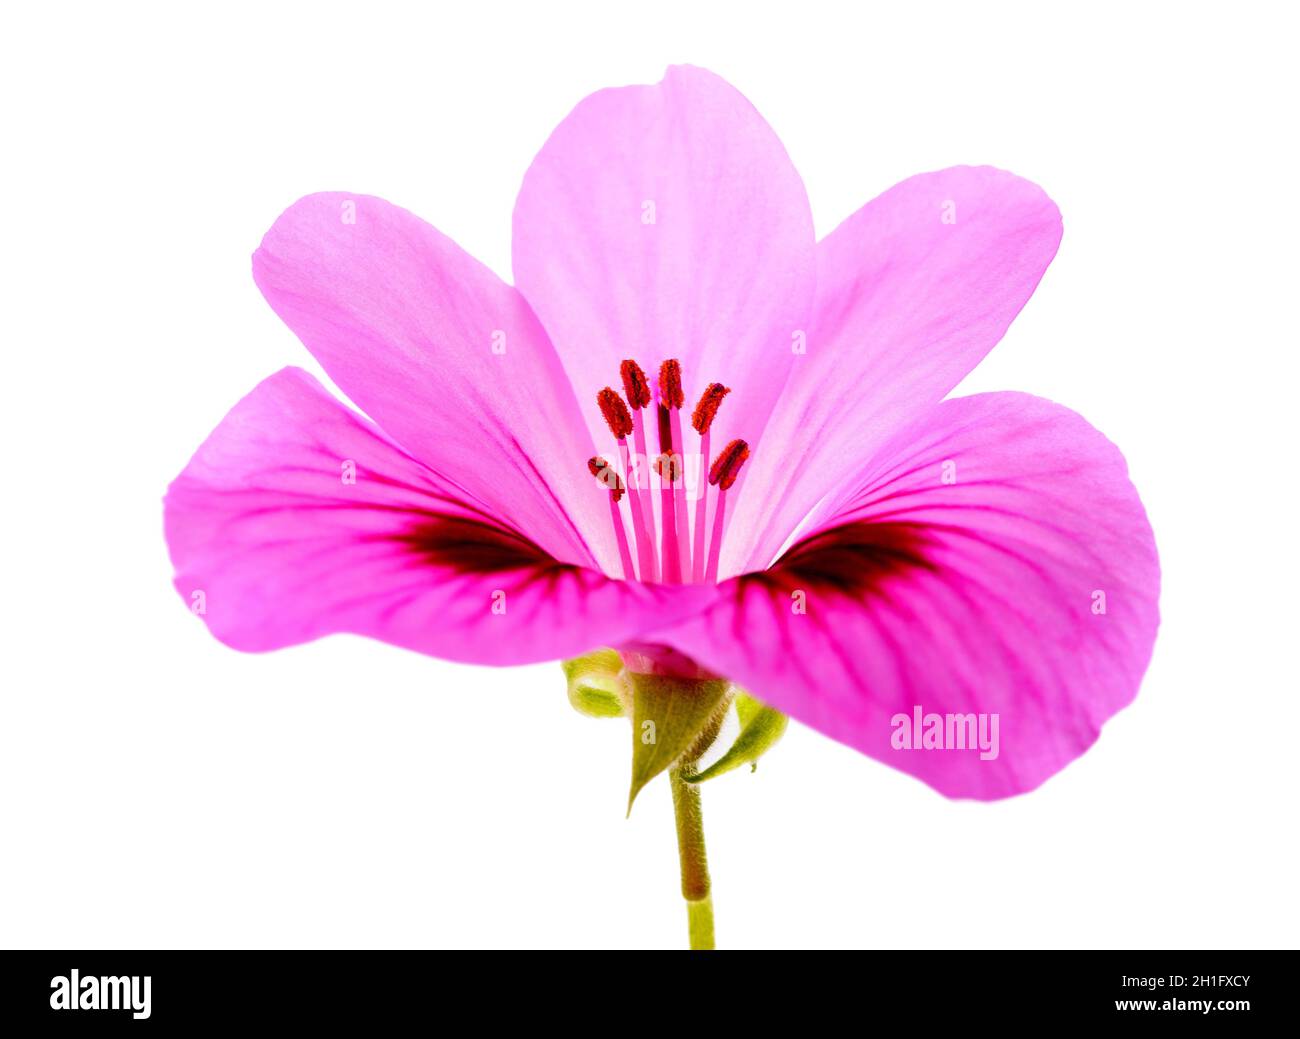 Geranium flower  isolated on white background Stock Photo